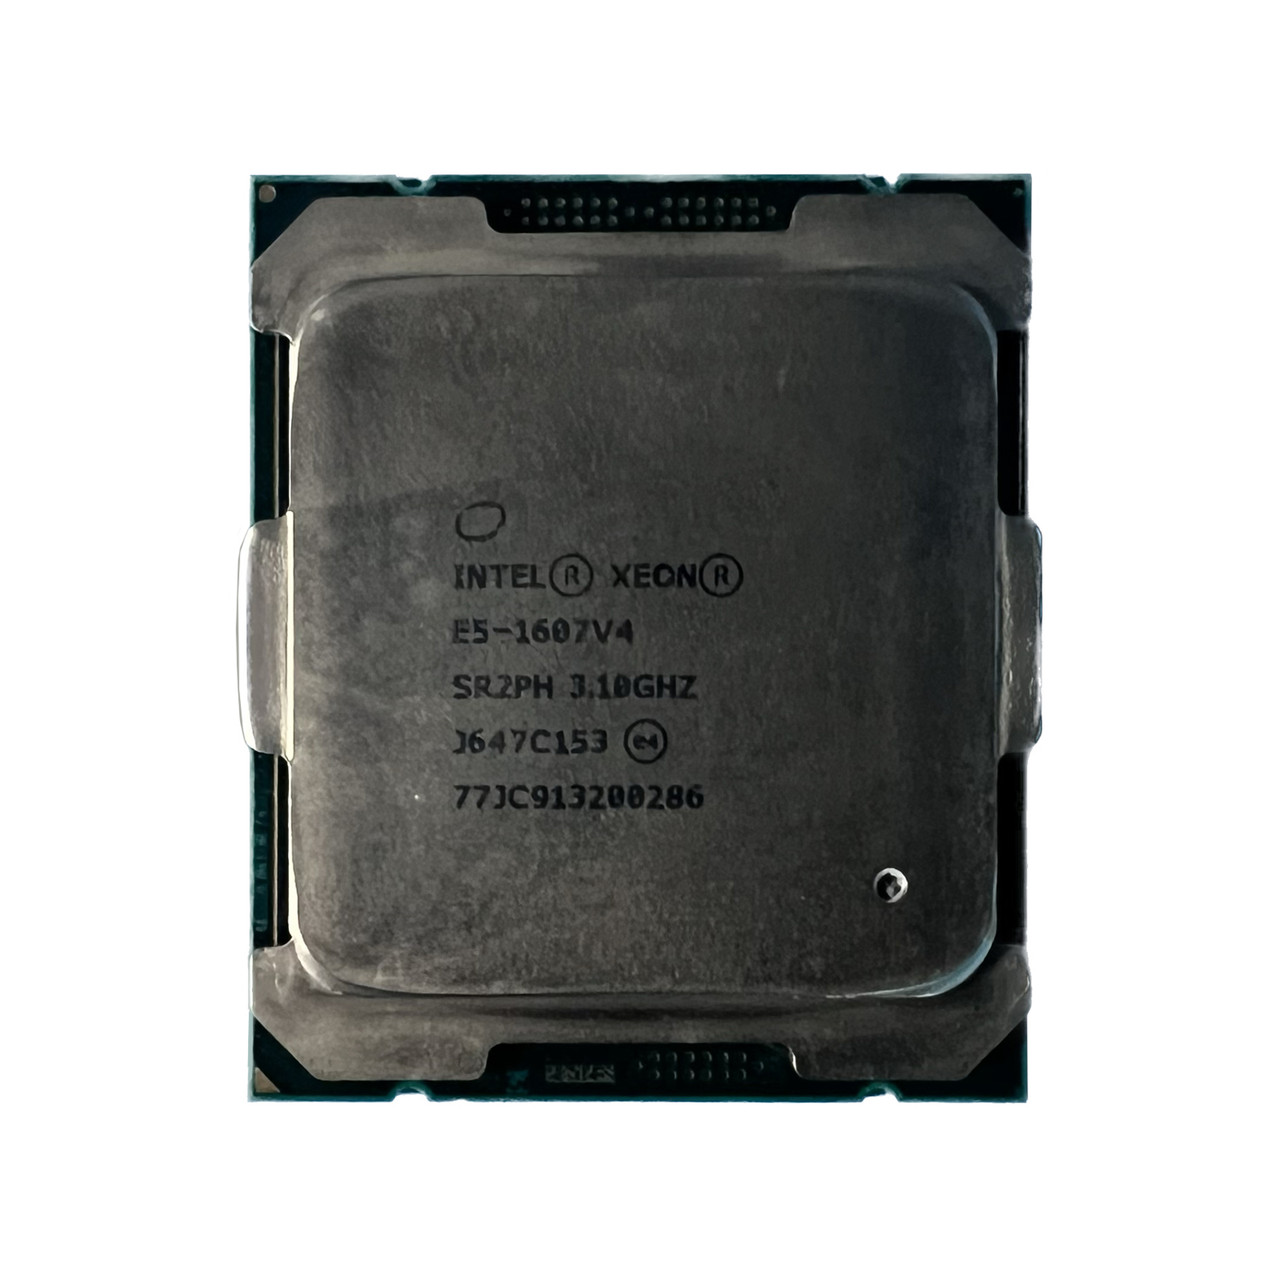 HP Z440 Z640 E5-1607 V4 4C 3.10Ghz 10MB Processor